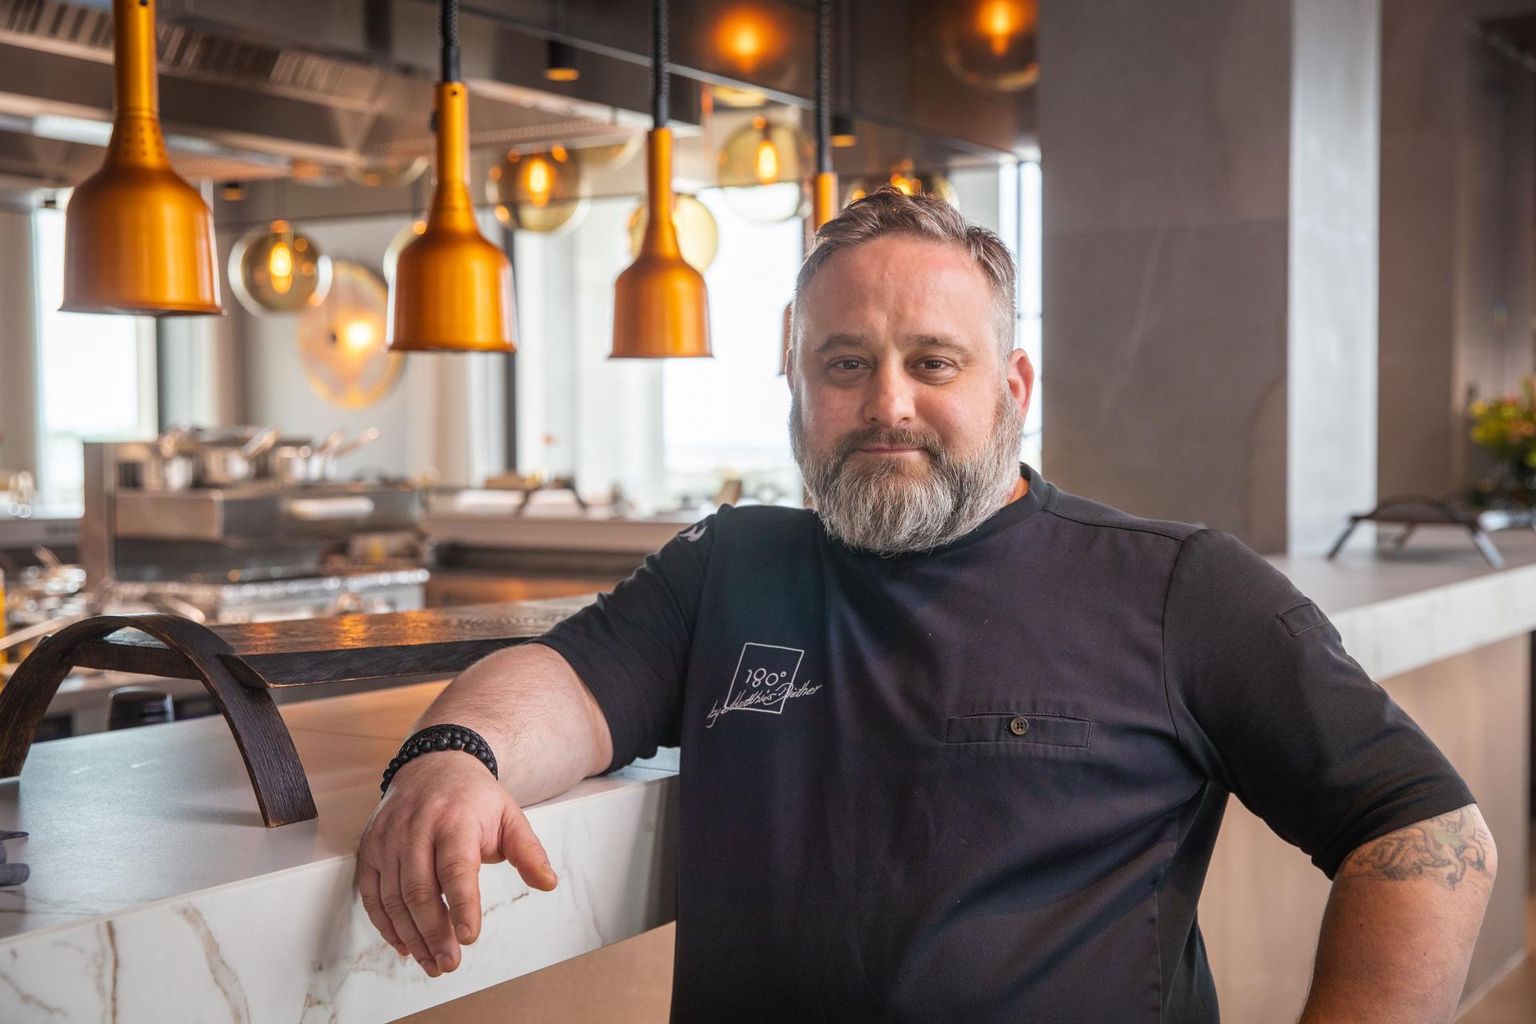 Esmakordselt Eesti kokanduse ajaloos võib gurmaanide piibli Michelini restoranigiidi kaks Michelini tähte oma restoraniuksele kinnitada 180° by Matthias Diether Tallinnas Noblessneris.